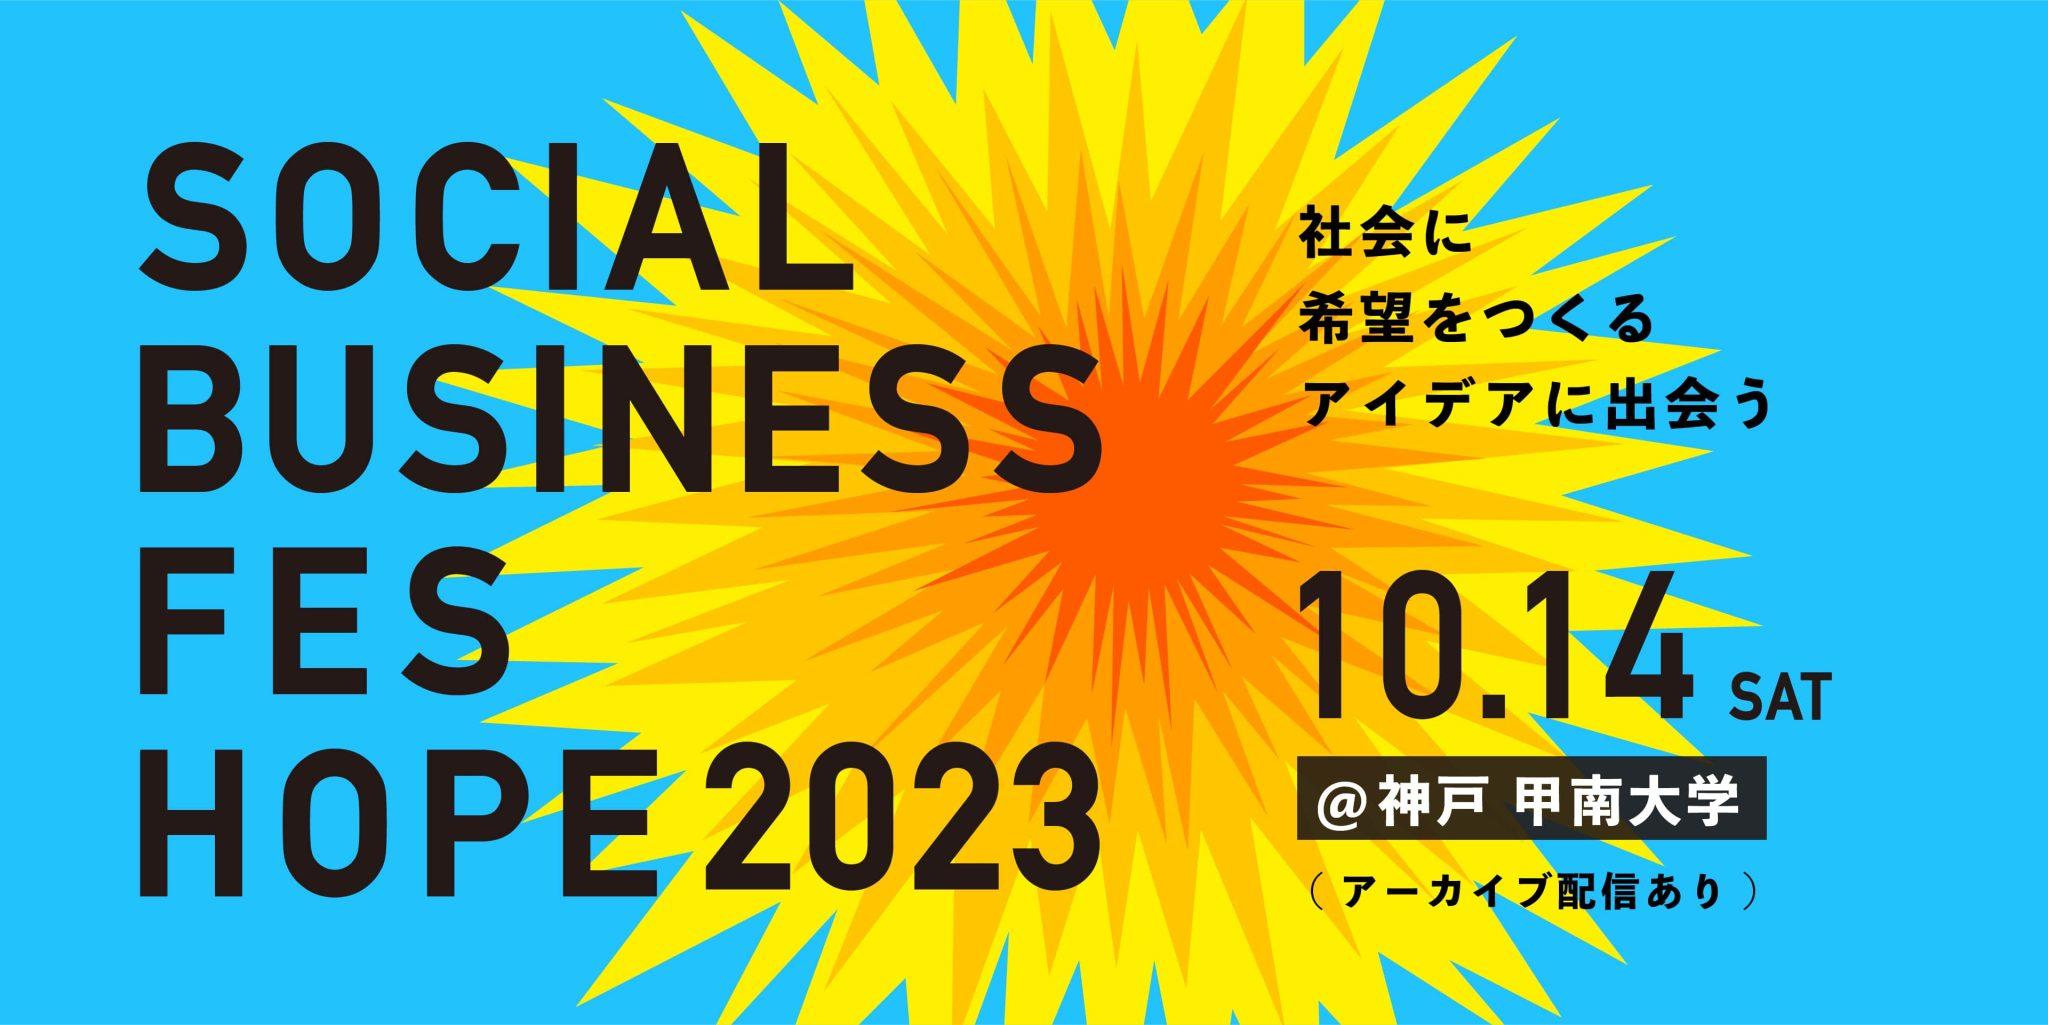 株式会社ボーダレス・ジャパンとともに「SOCIAL BUSINESS FES HOPE 2023」を開催 -- ソーシャルビジネスによる地域課題の解決を支援 --